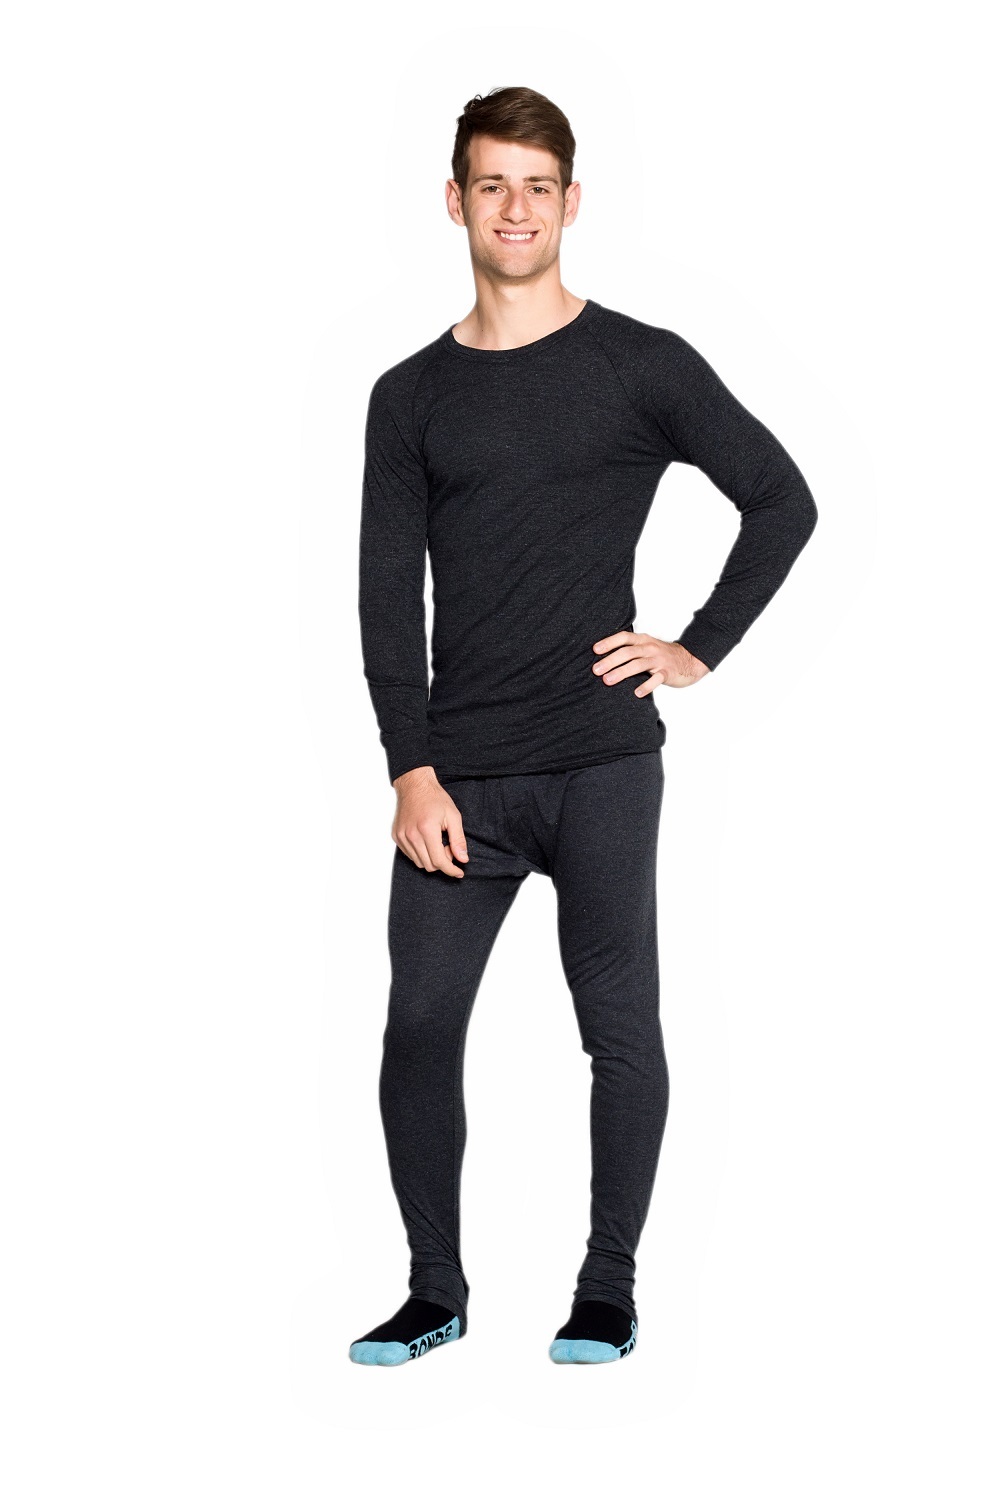 Thermal Underwear - Buy Men's Thermal Clothing